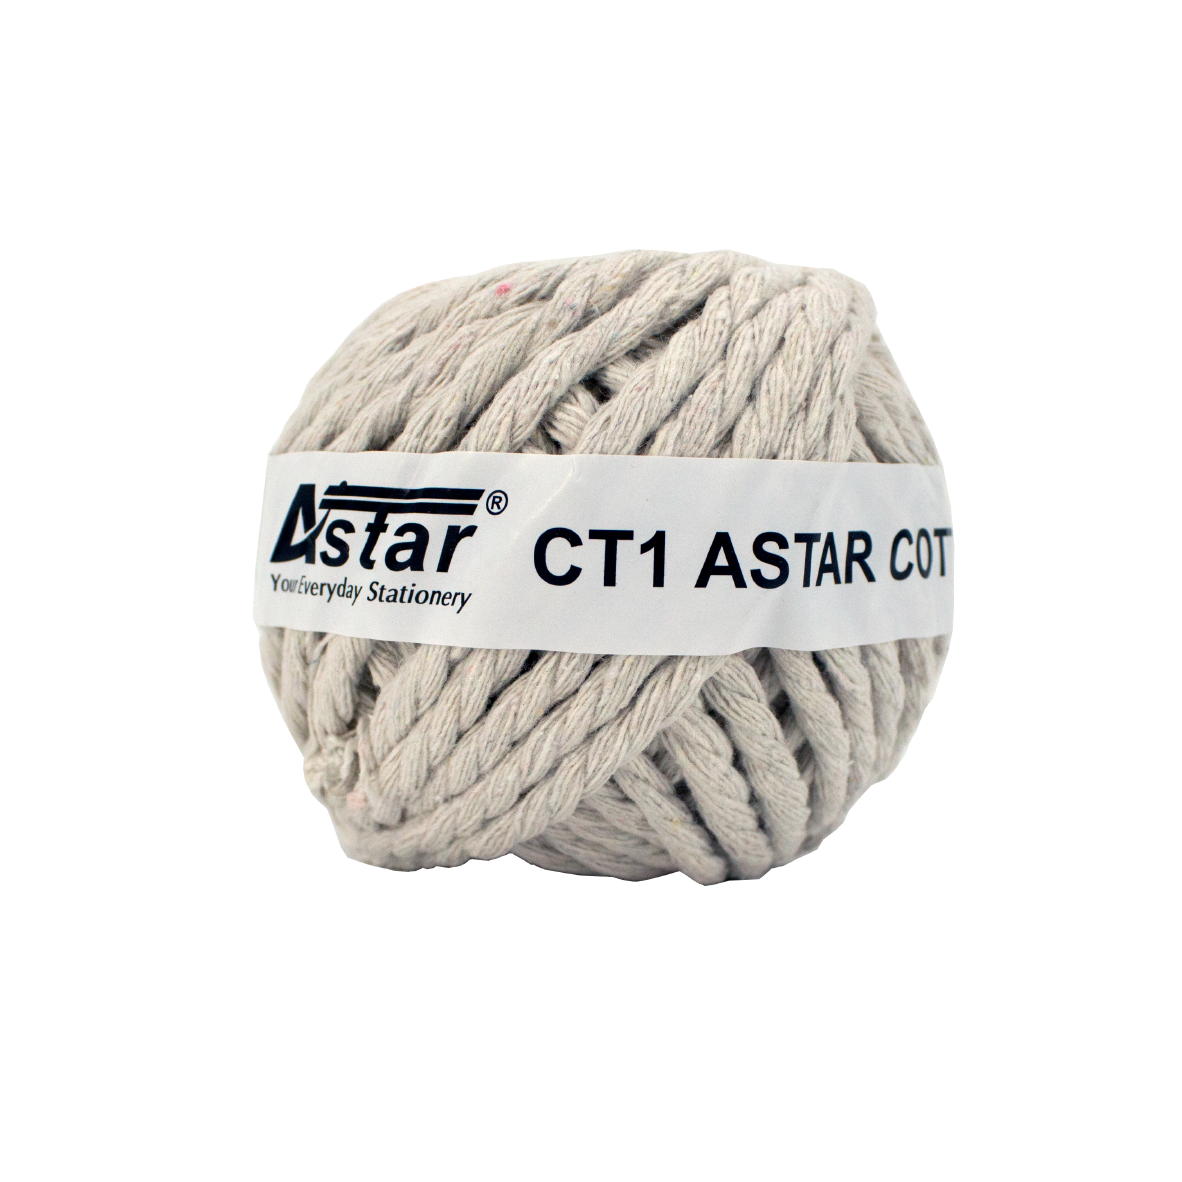 CT1 - ASTAR COTTON TWINE